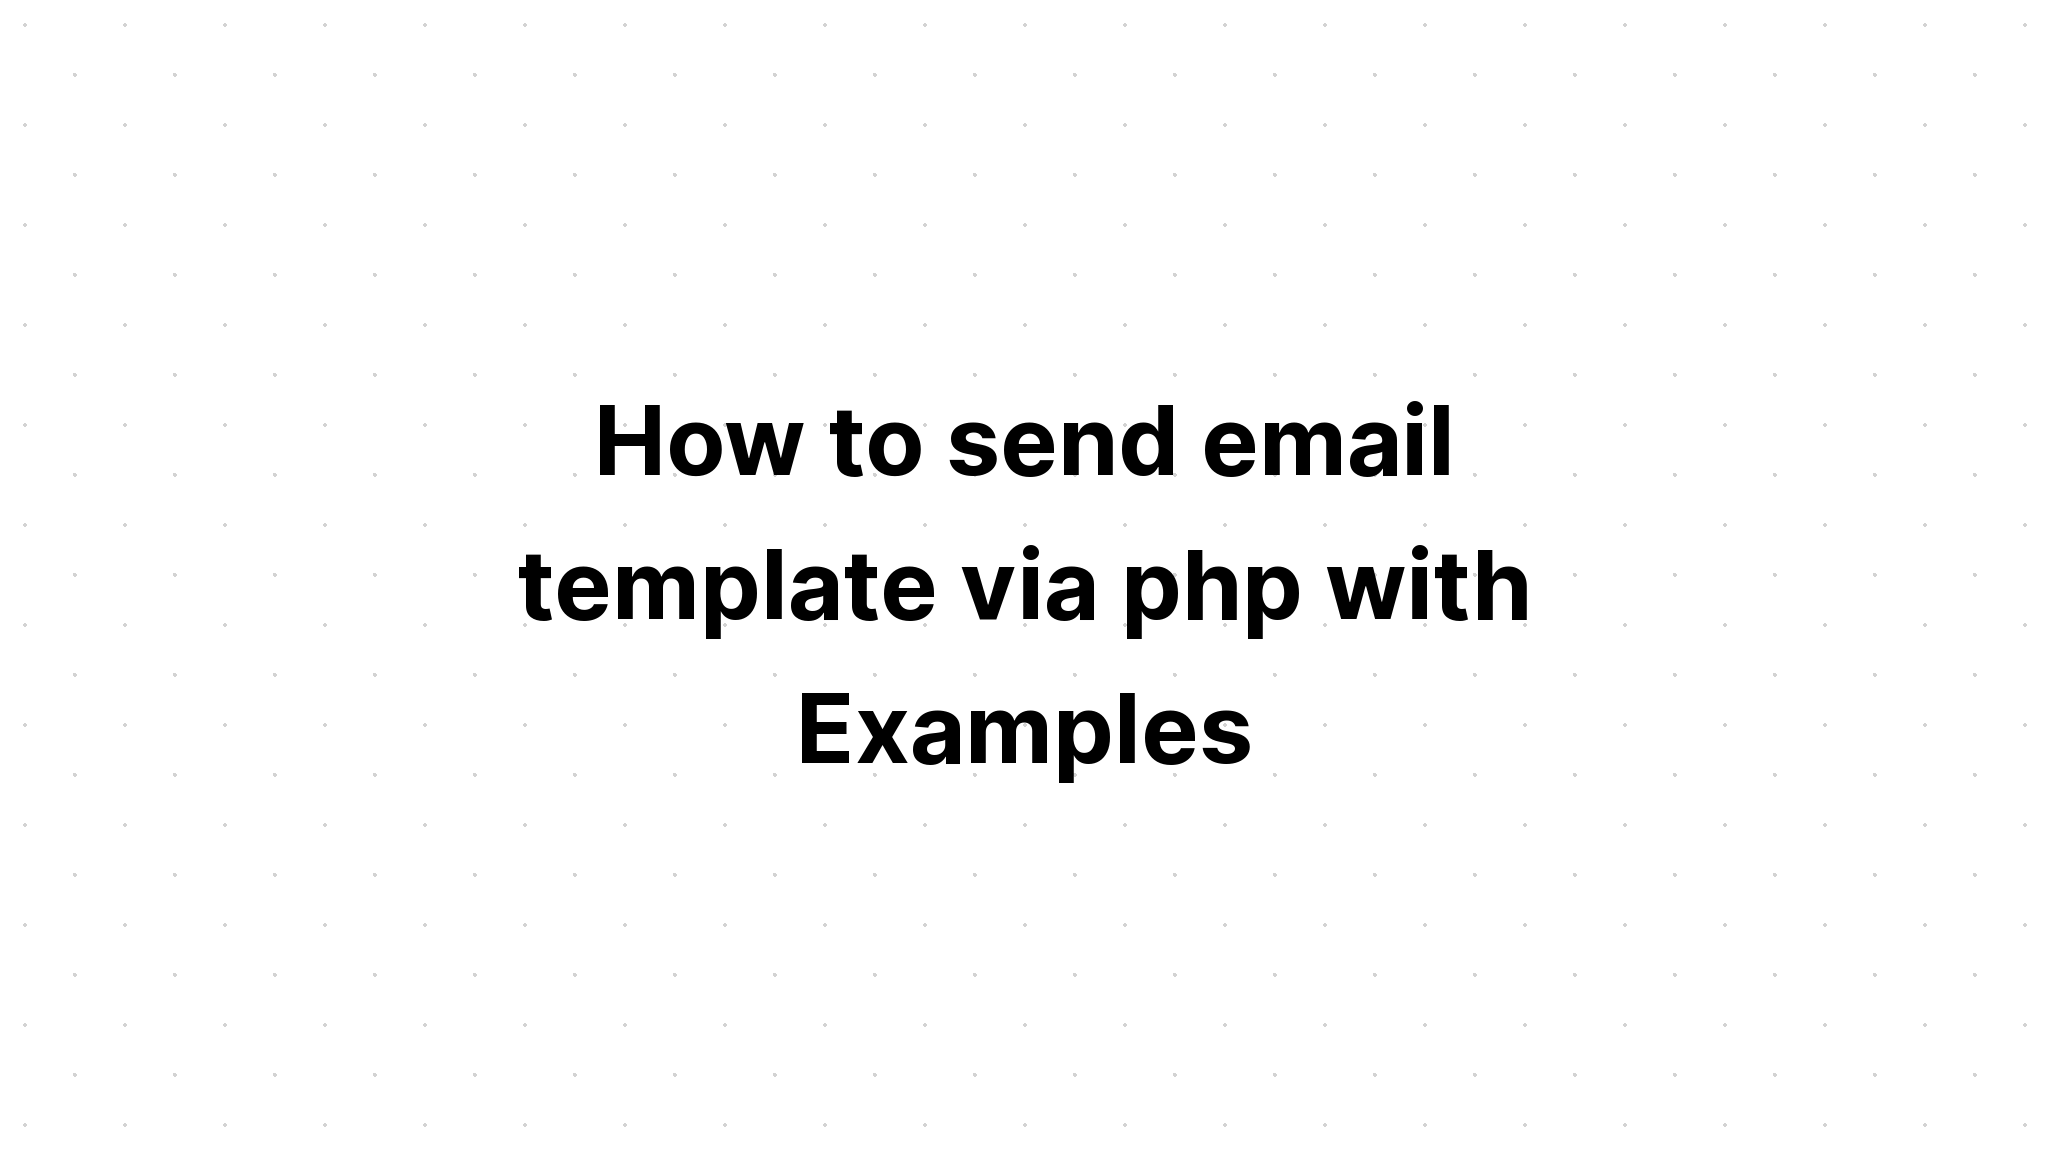 Cách gửi mẫu email qua php với các ví dụ